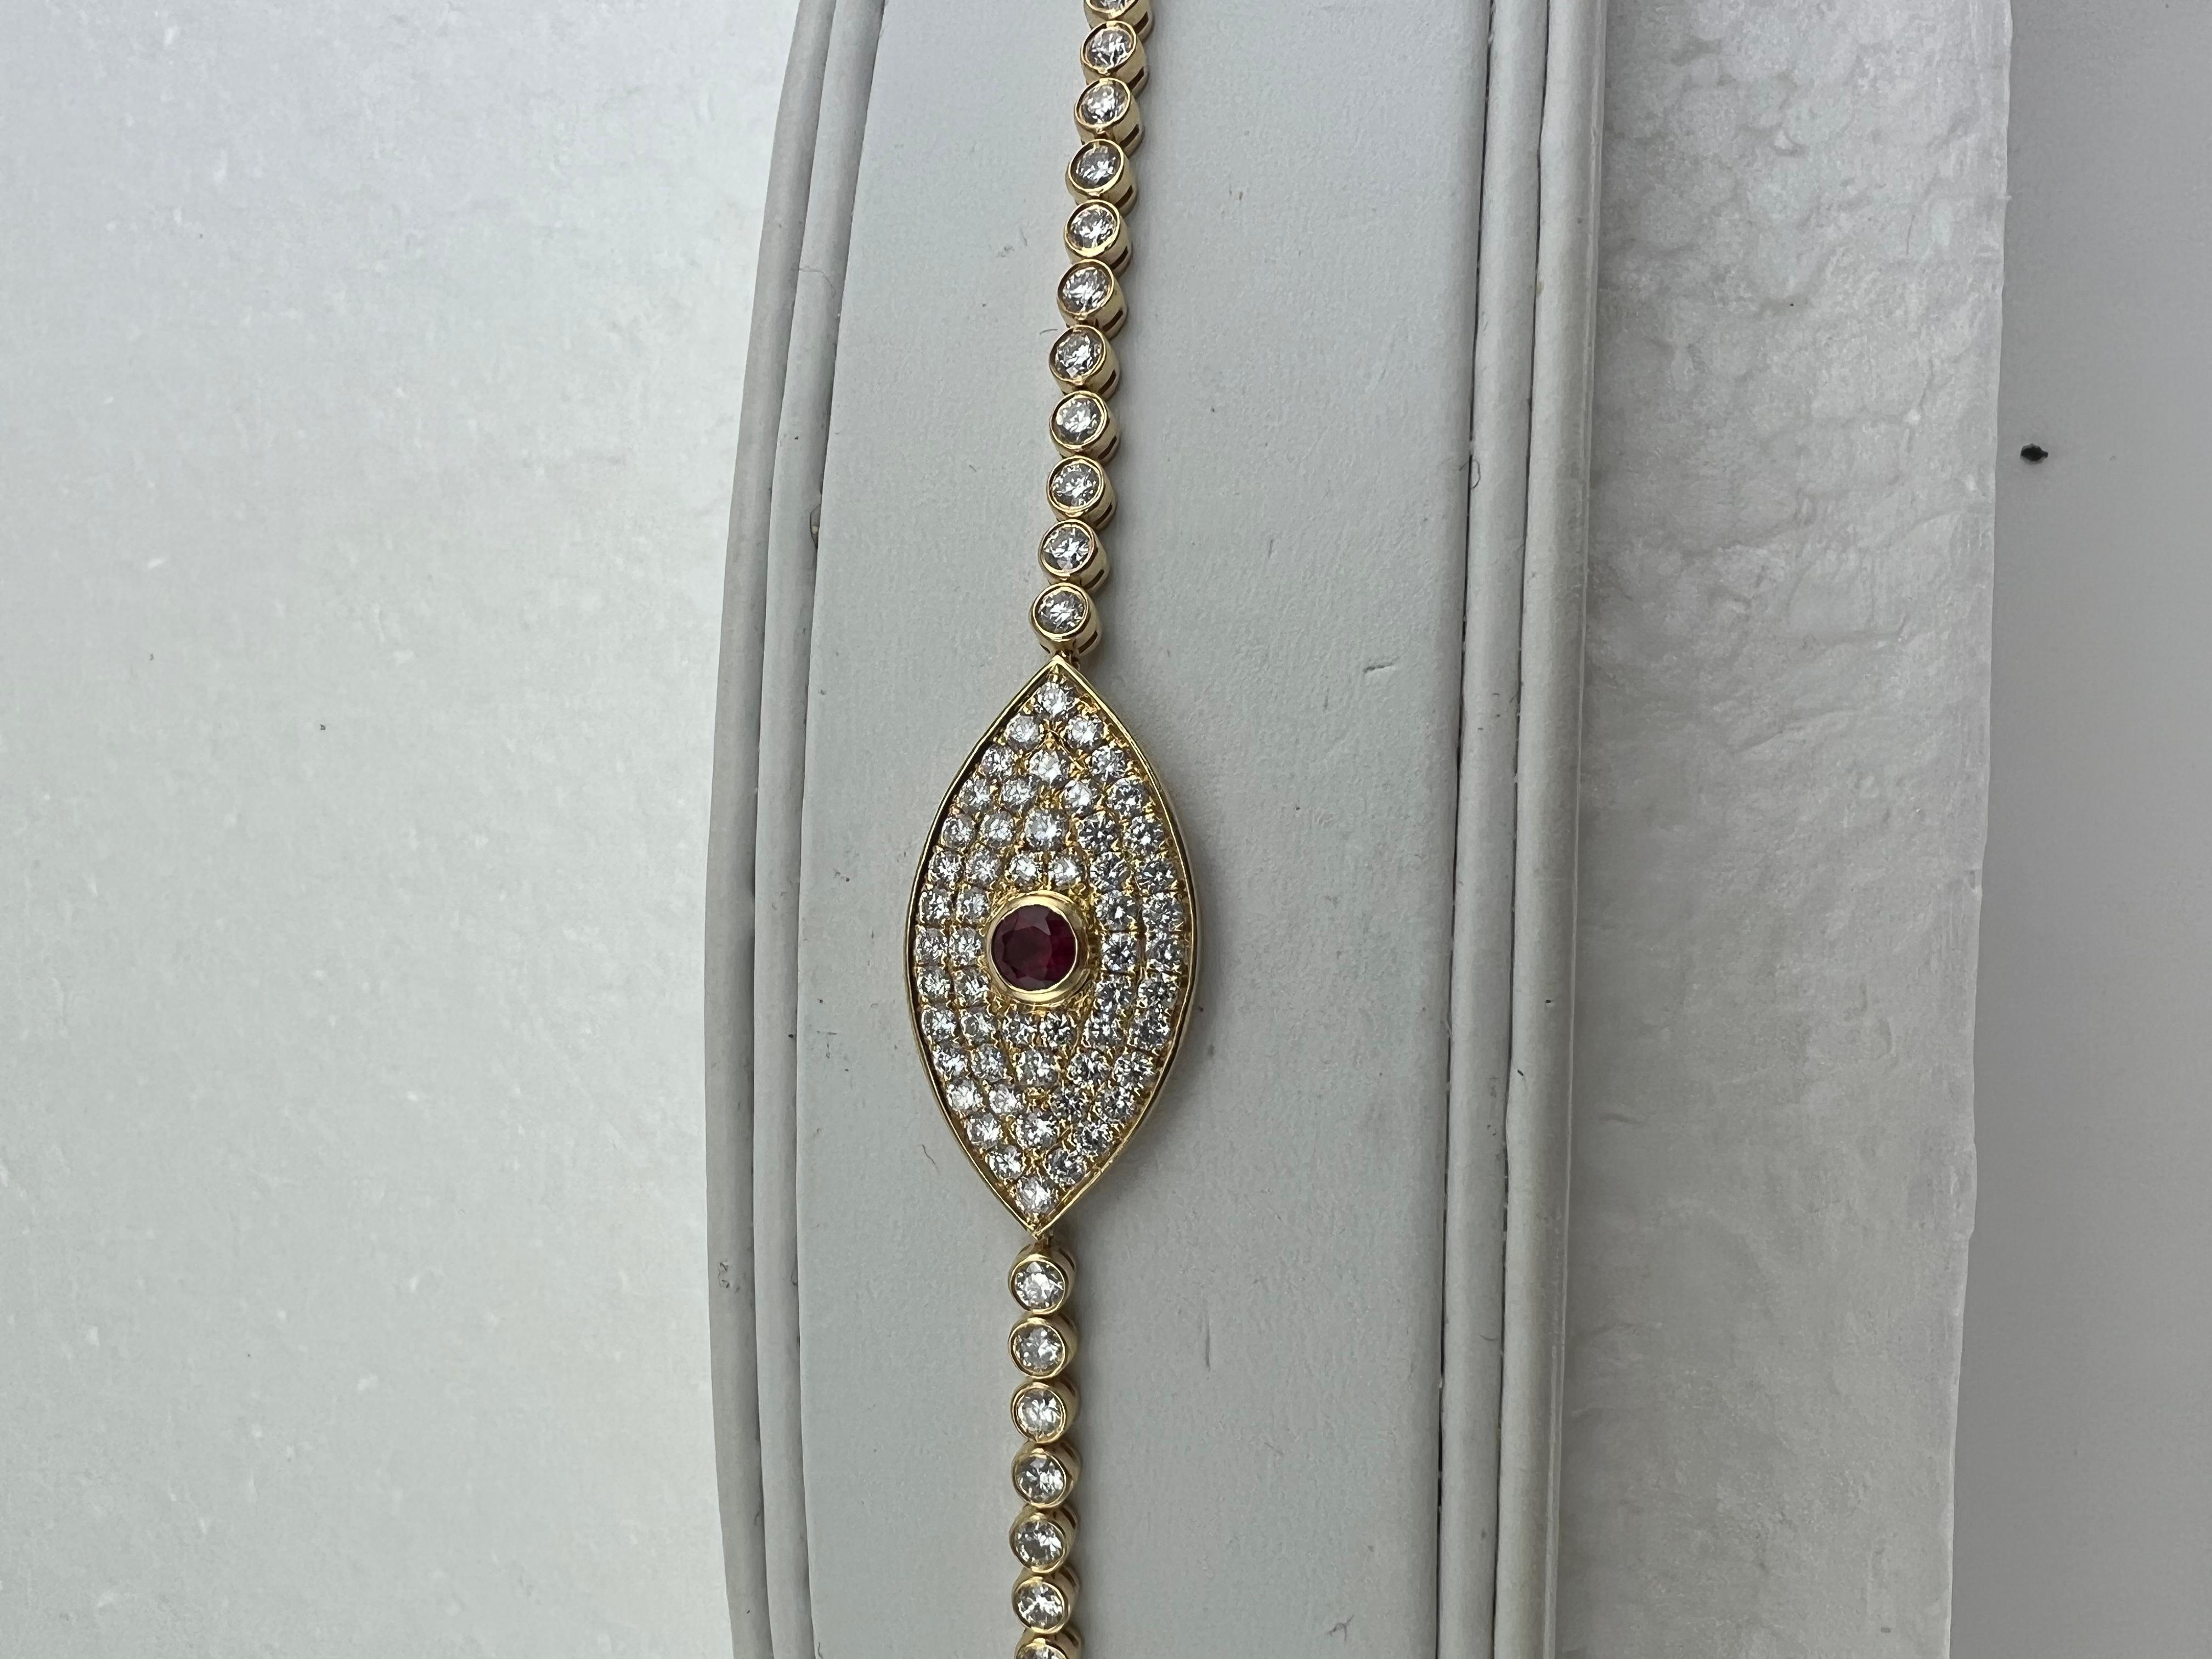 Böses Auge Amulett Diamant Rubin Gelbgold

   Dies ist ein ganz besonderes Armband, gut gemacht.  Es ist so konzipiert, dass es enger am Handgelenk anliegt als andere Diamantarmbänder, so dass das Amulett mit dem Bösen Auge in der Mitte oben am